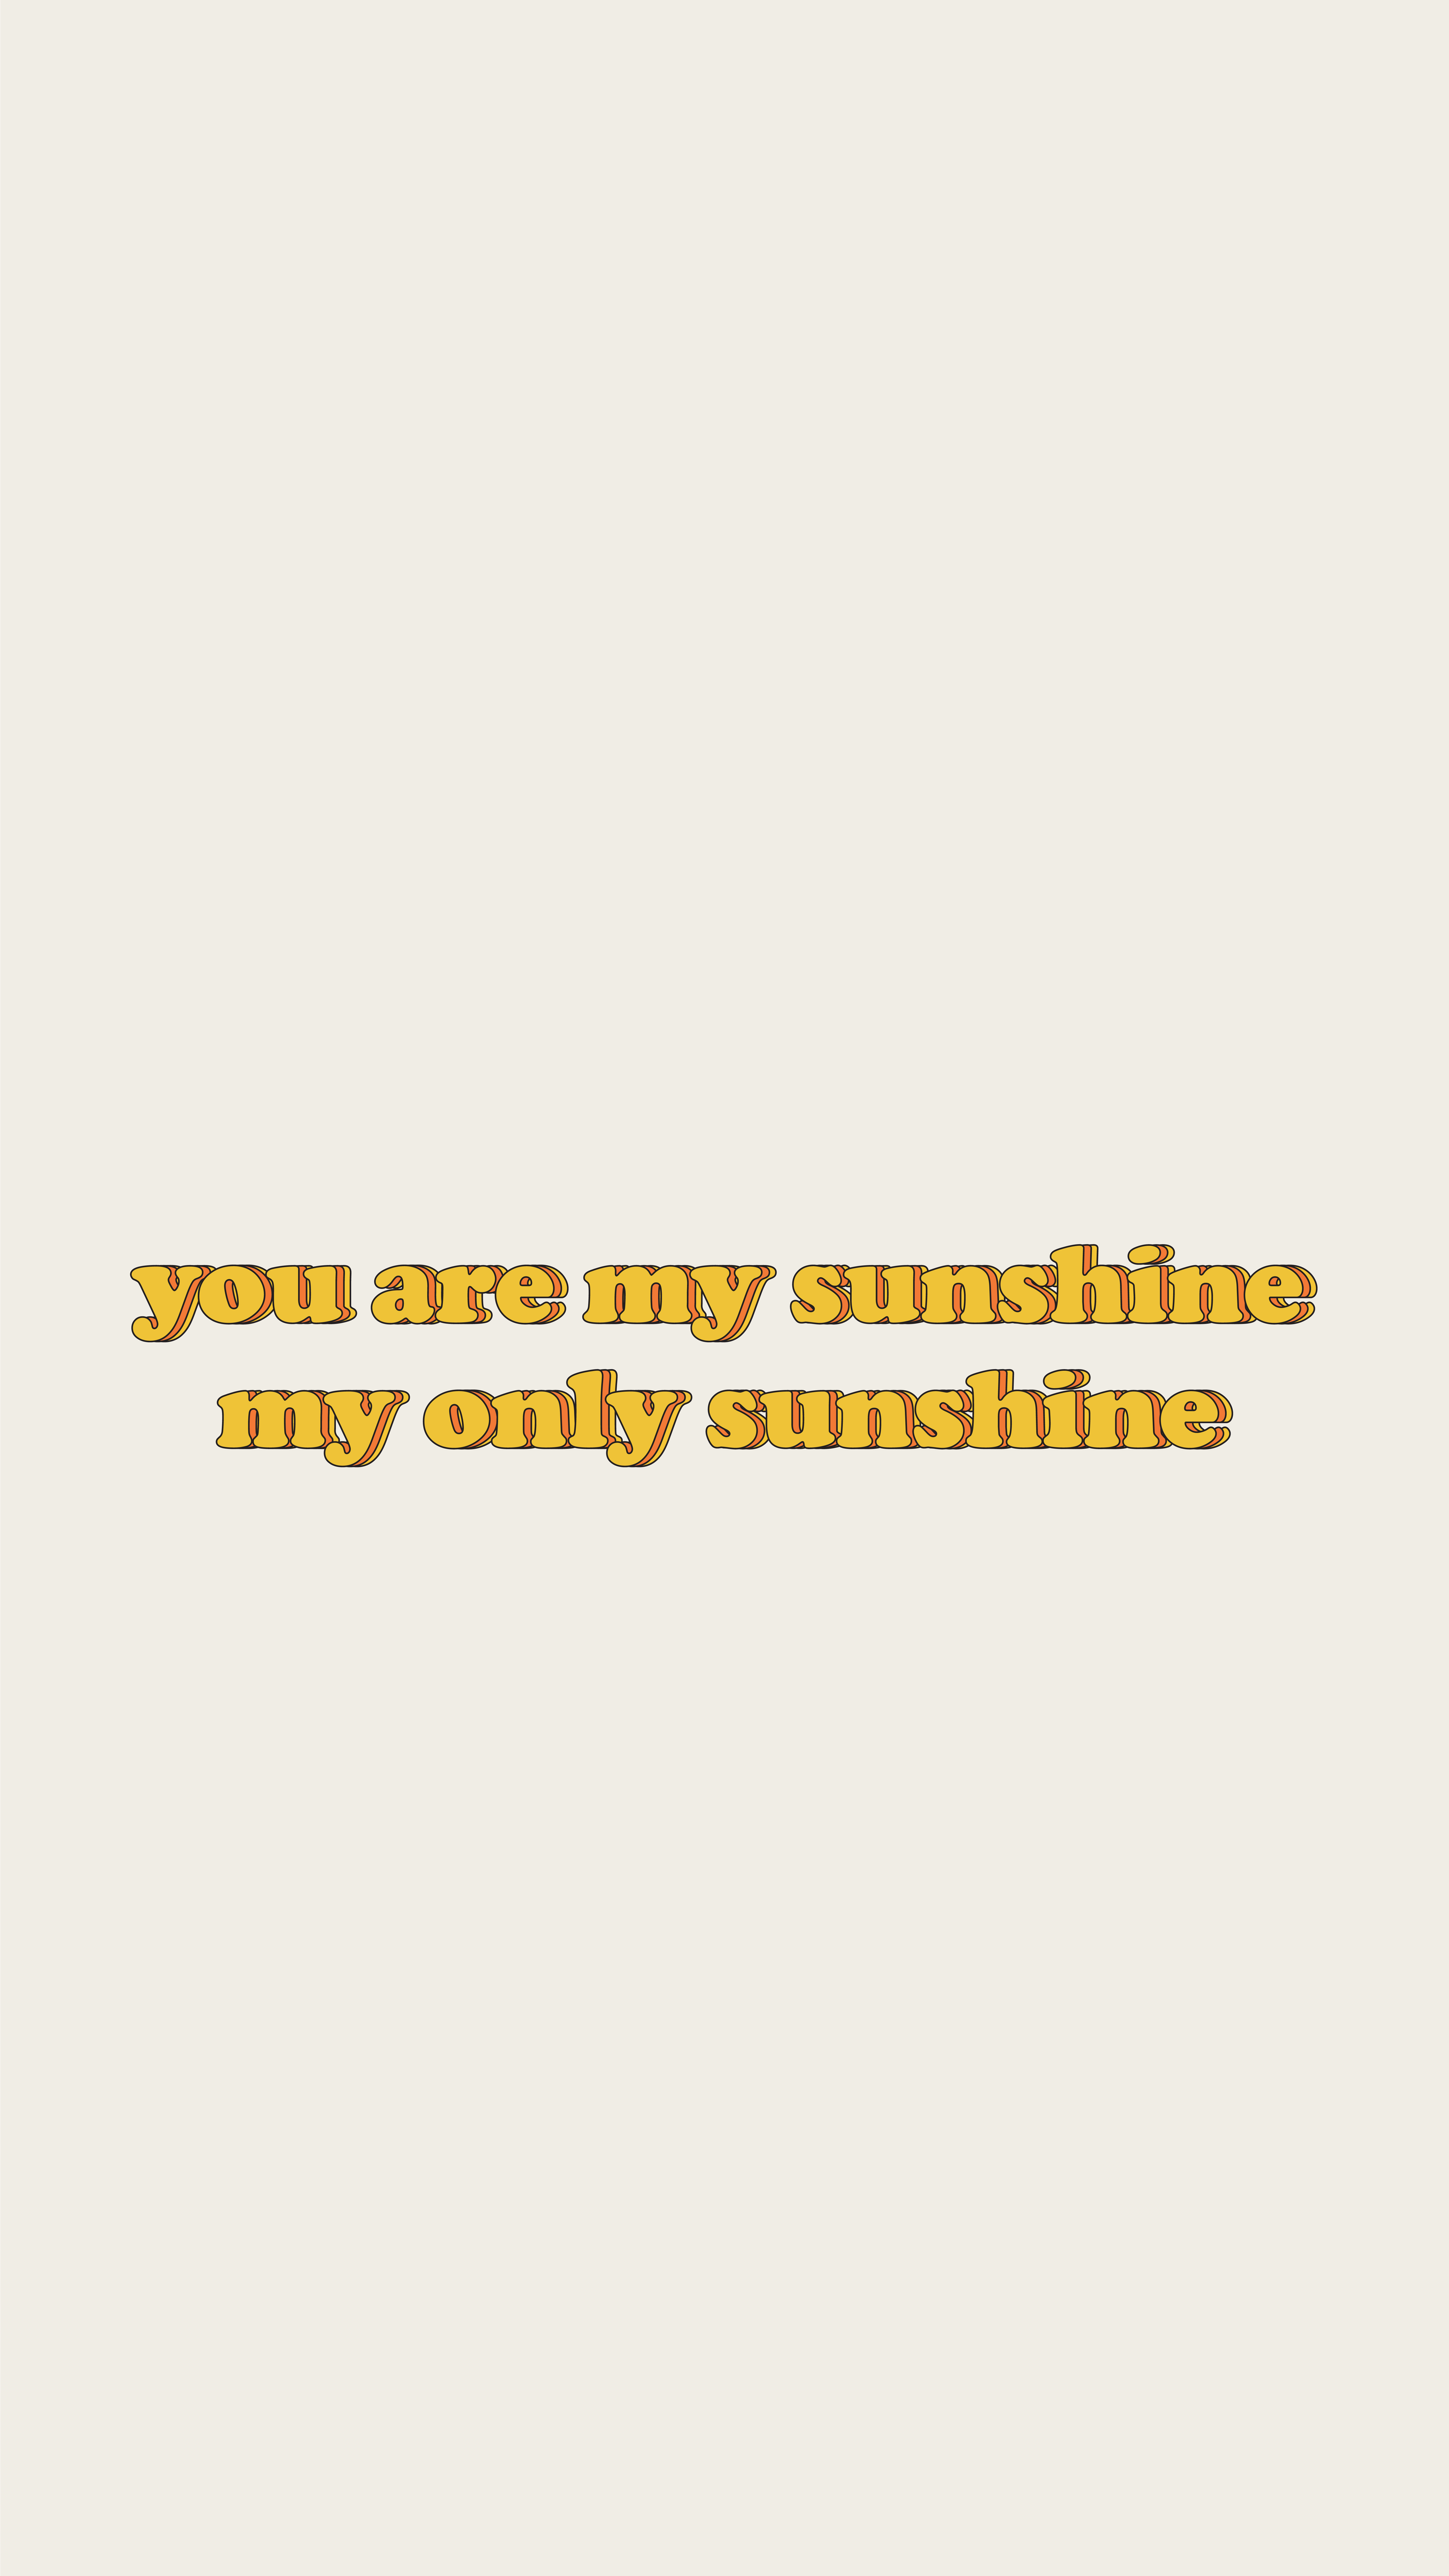 You are my sunshine lyrics - Sunshine